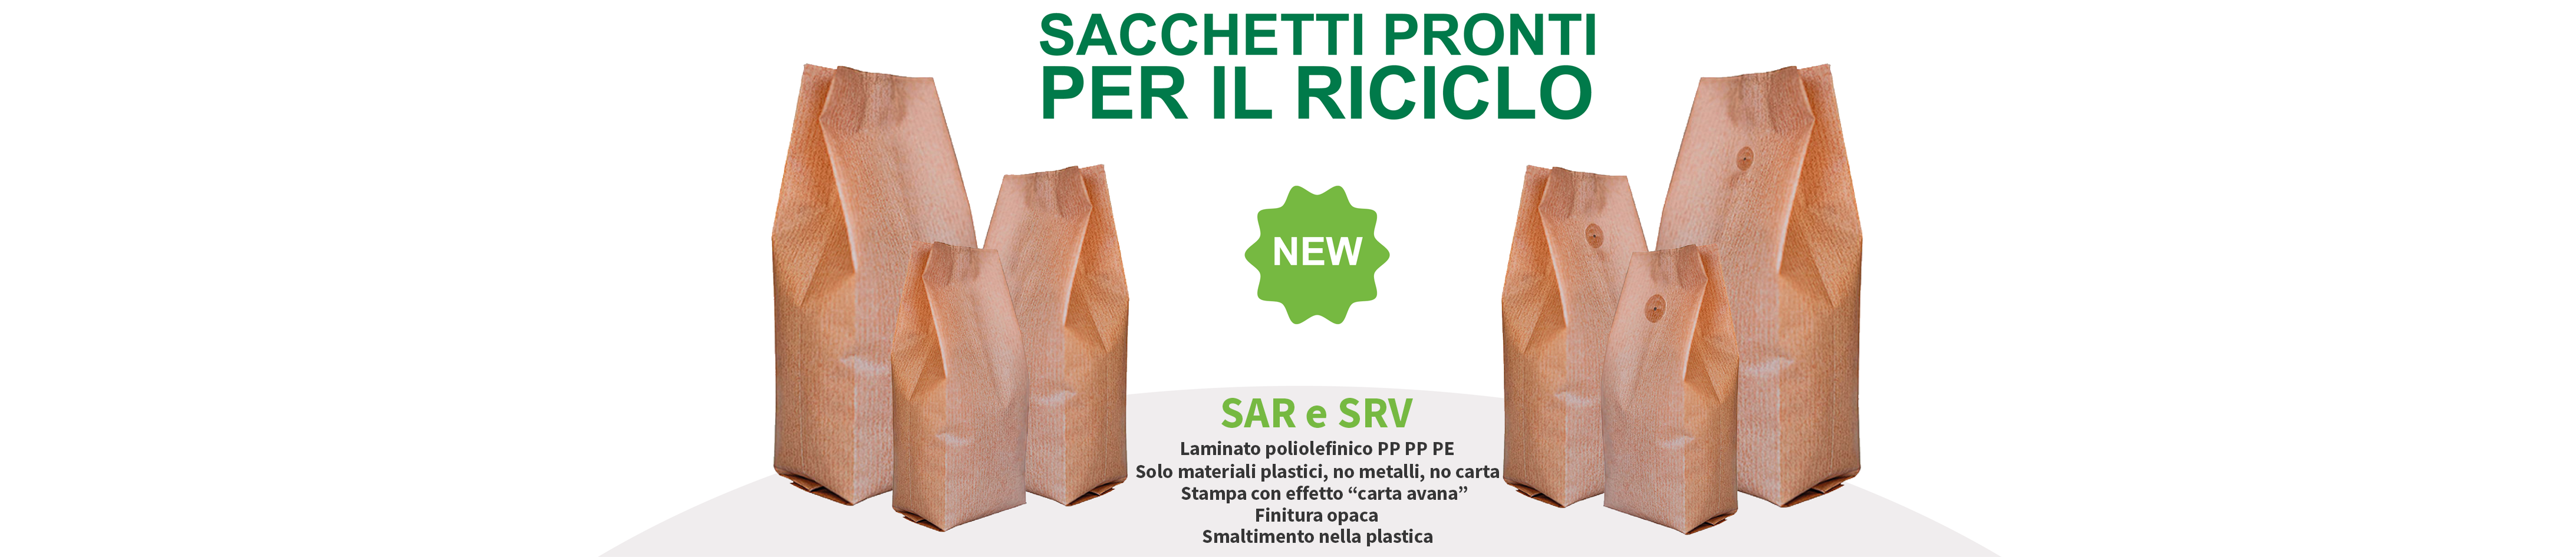 sacchetti_riciclabili_new.png